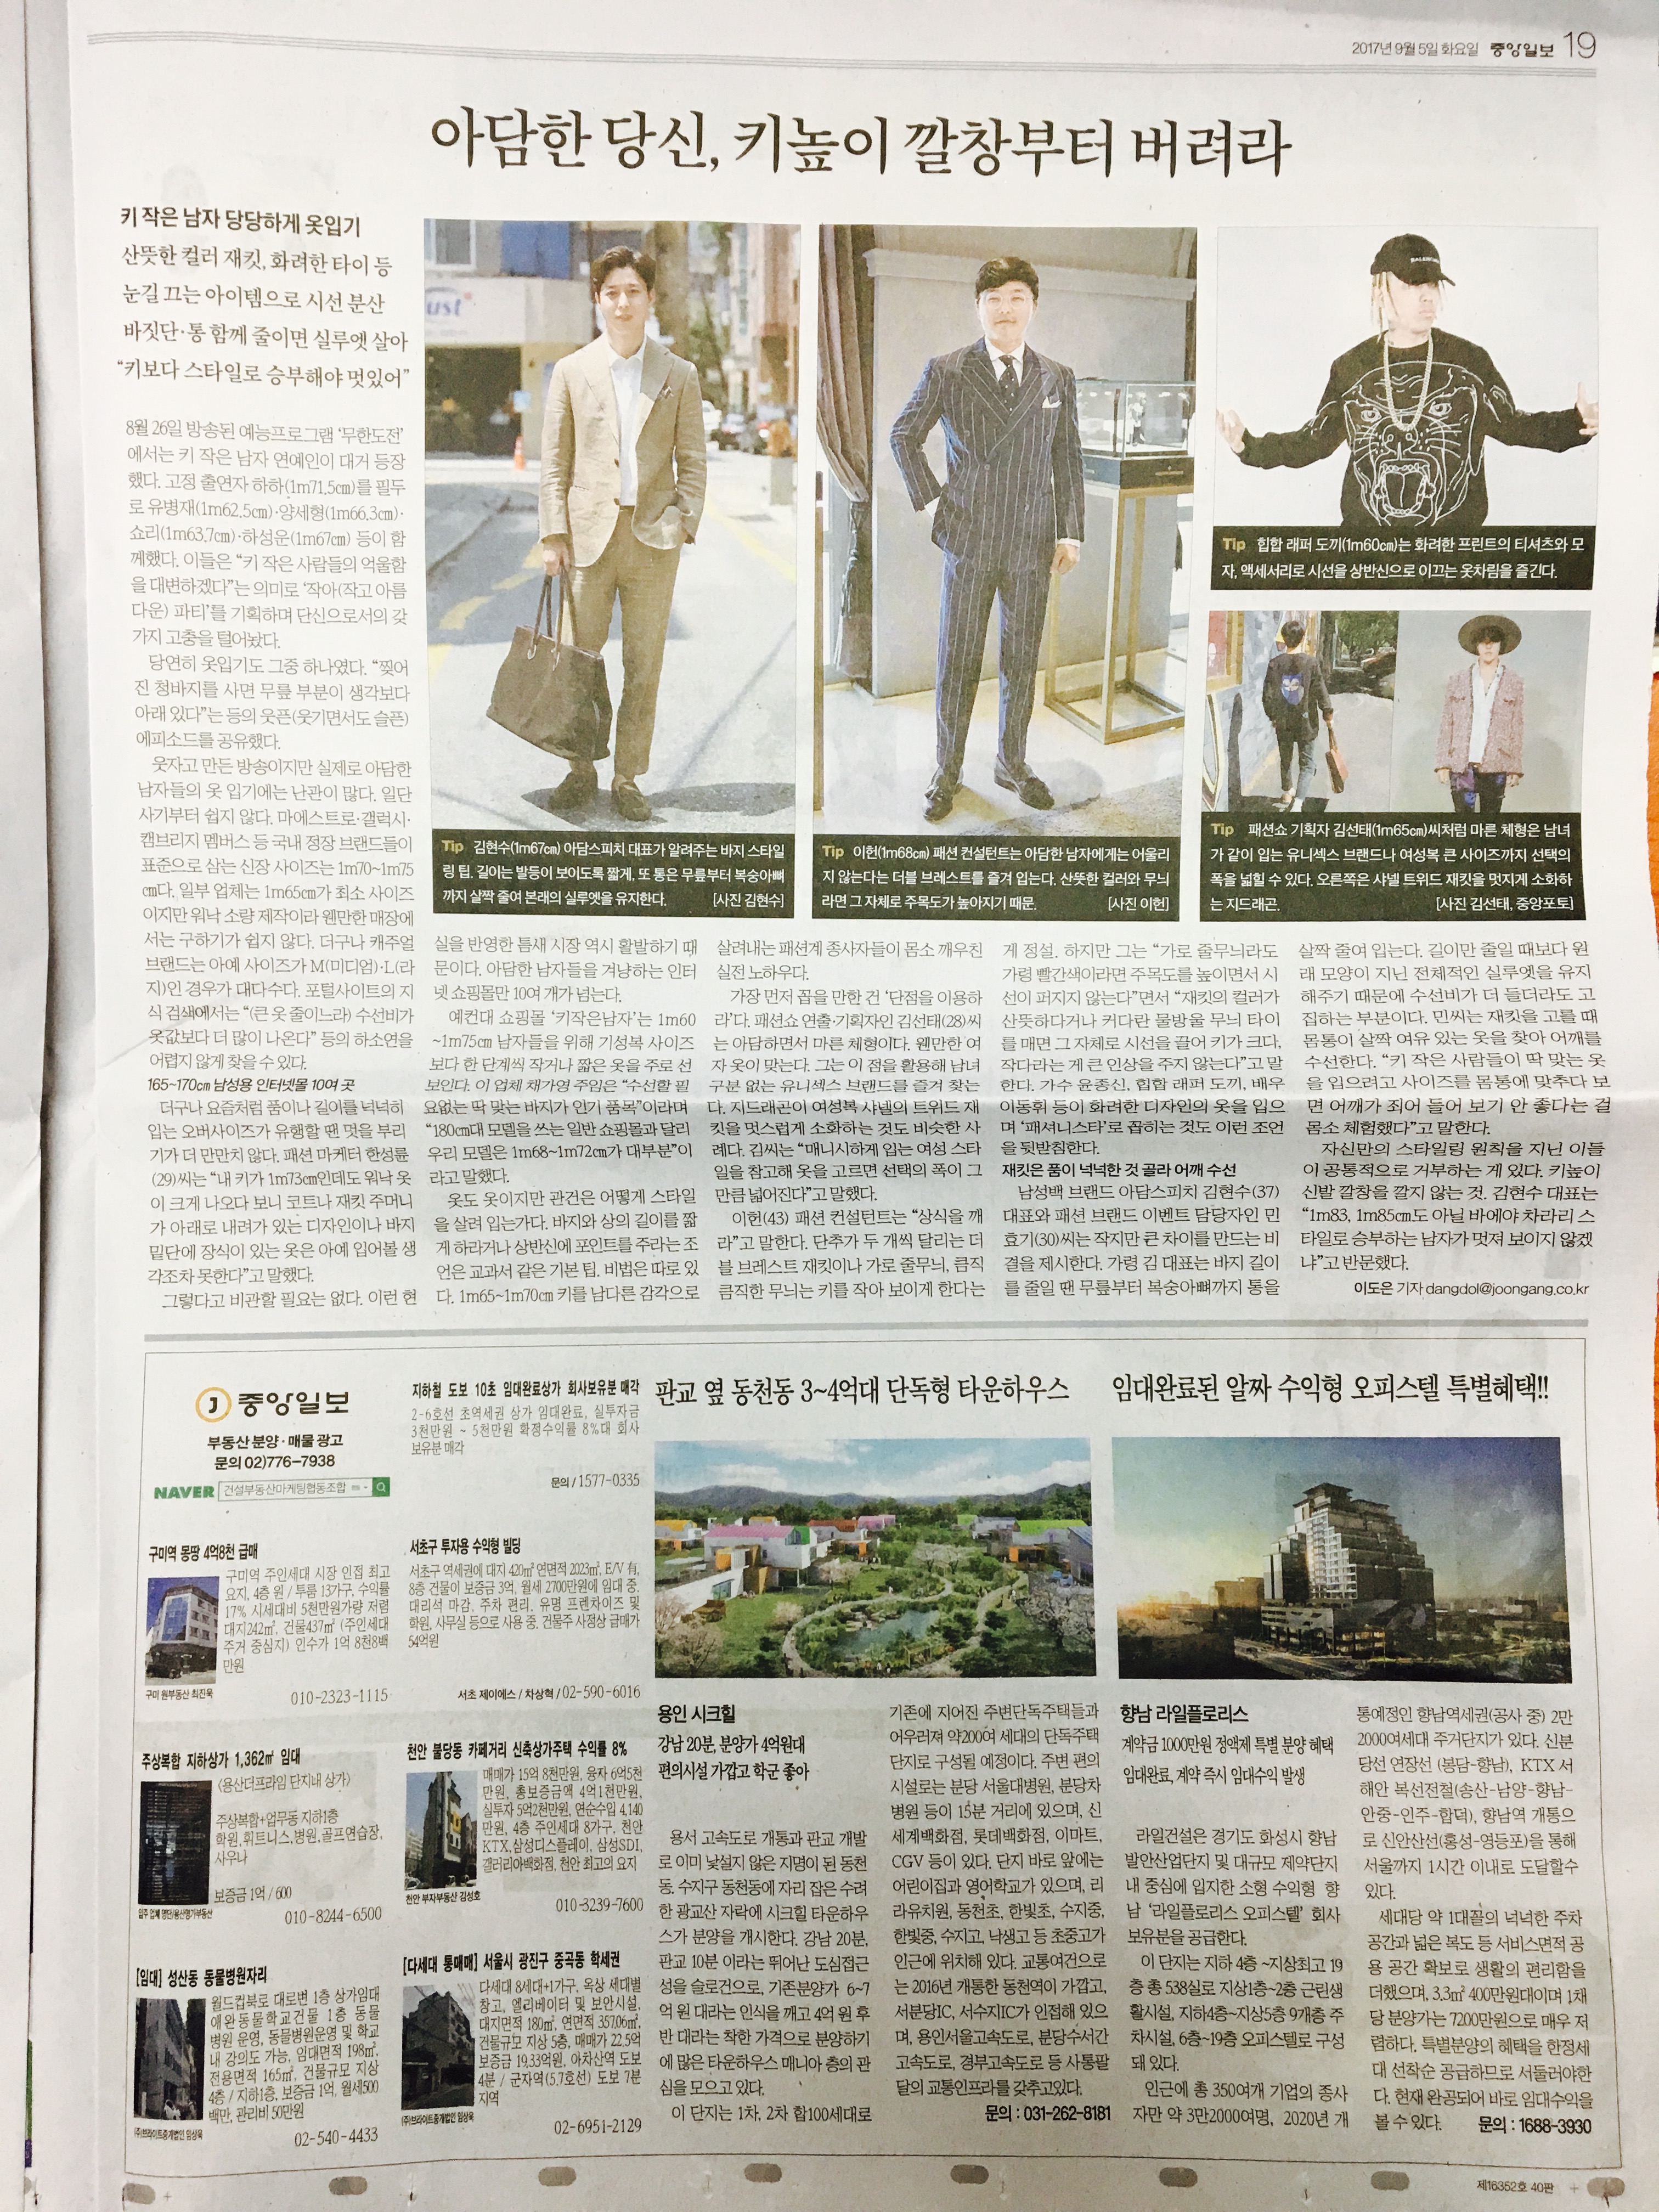 9월 5일 중앙일보 19 기사식 매물광고.jpg